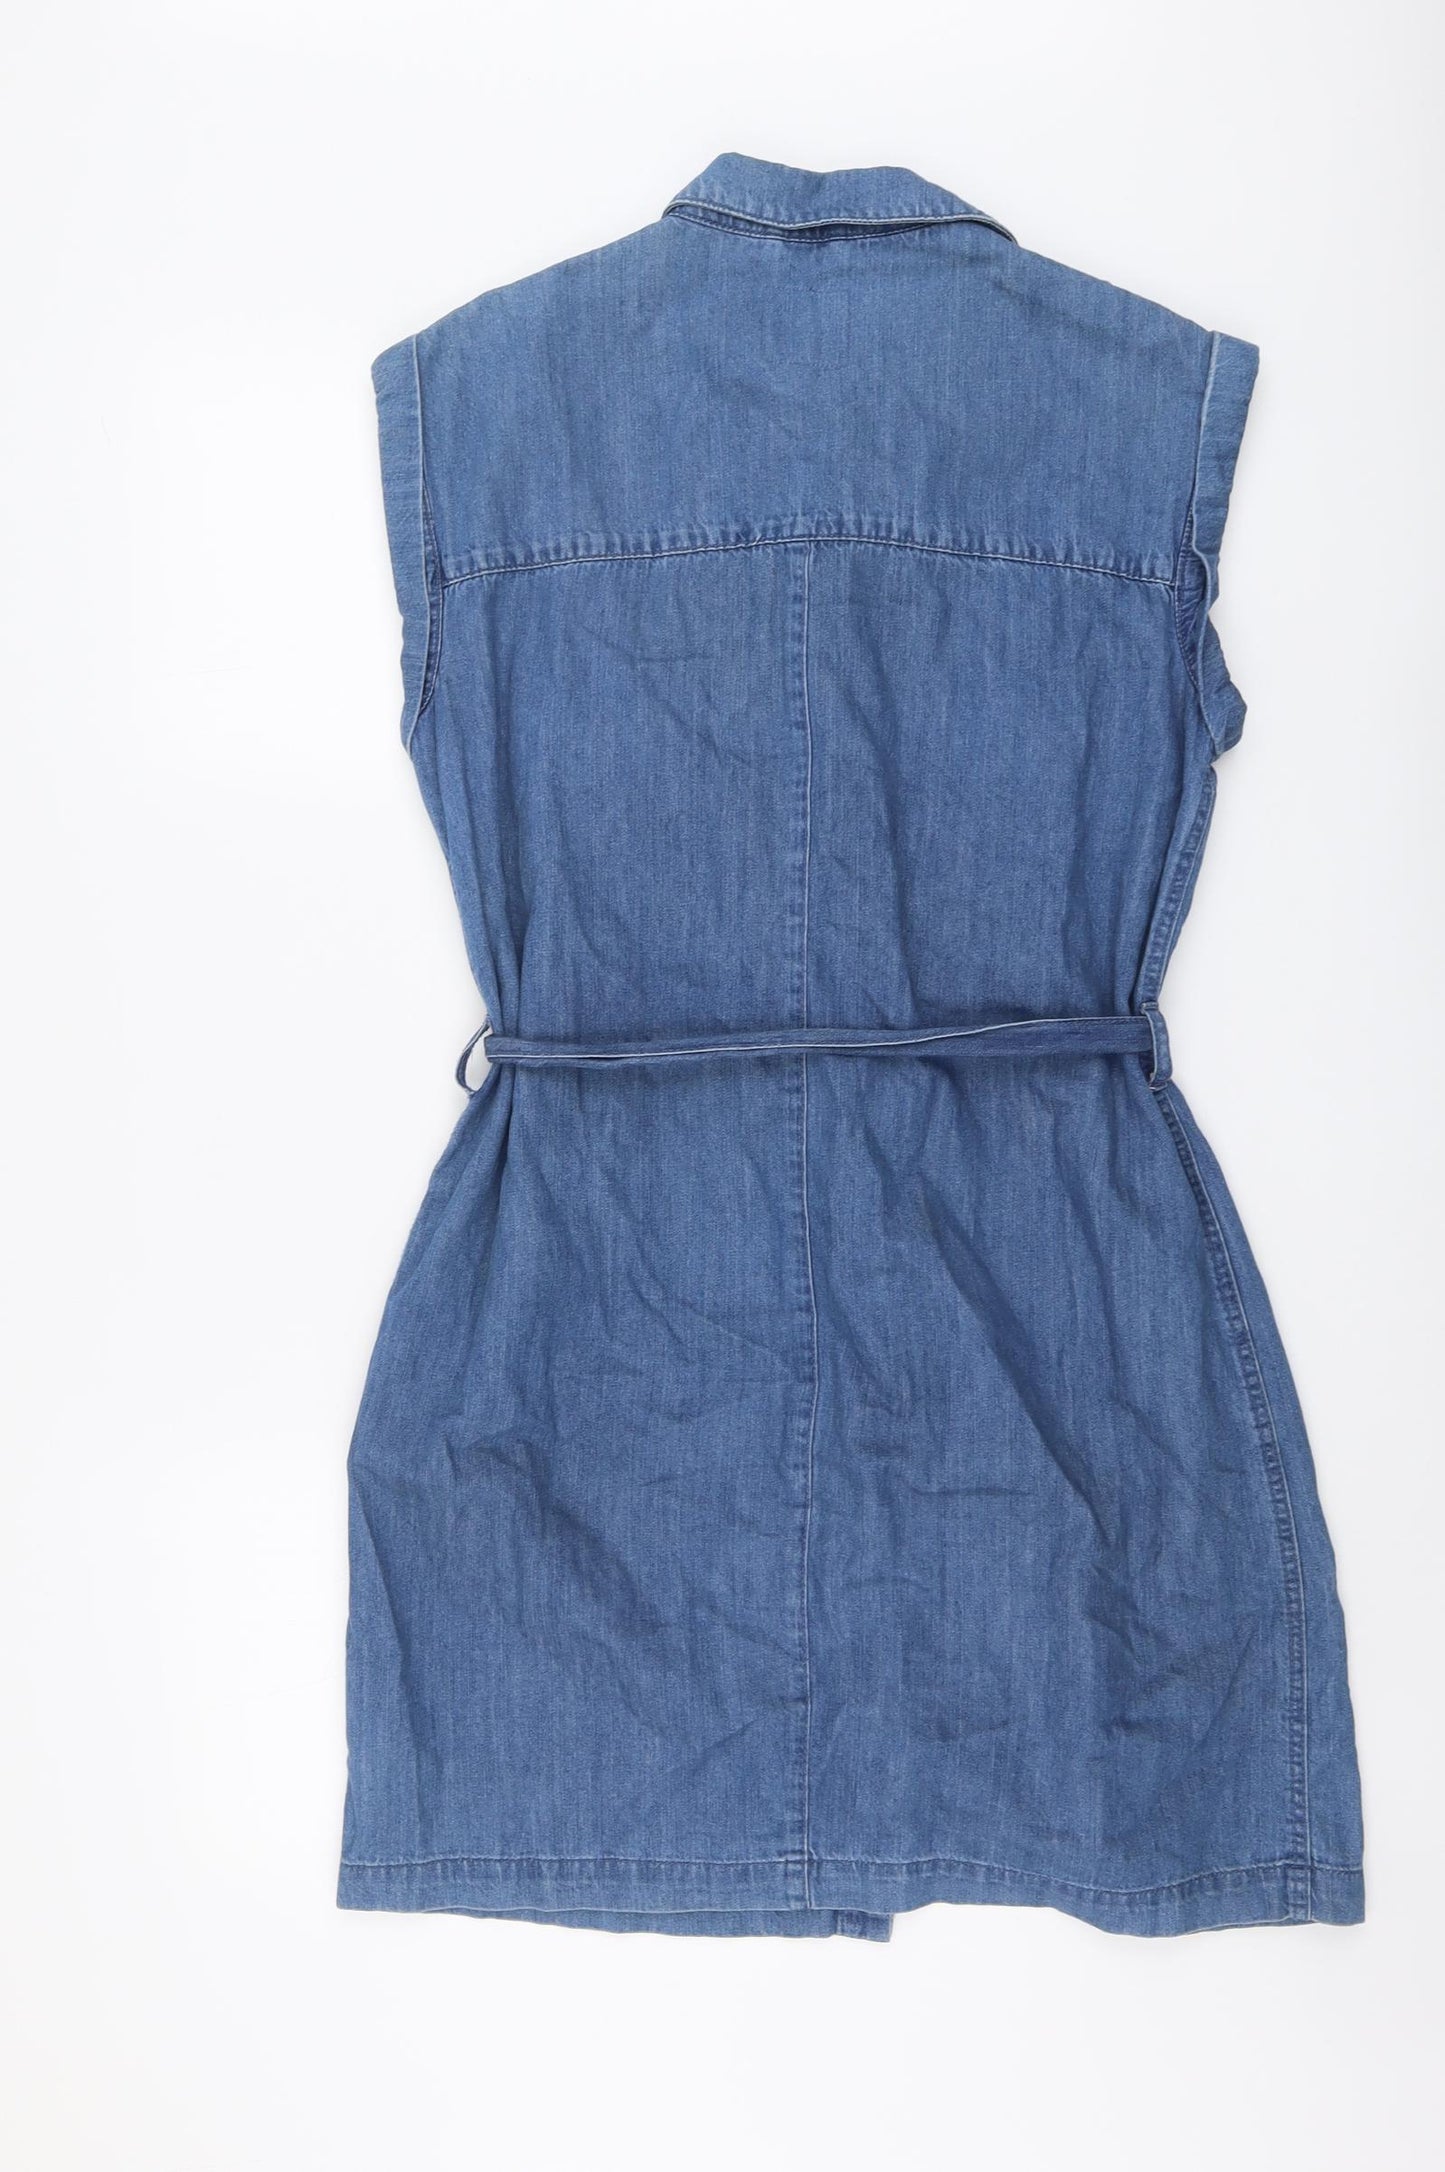 NEXT Womens Blue Cotton Shirt Dress Size 14 Collared Button